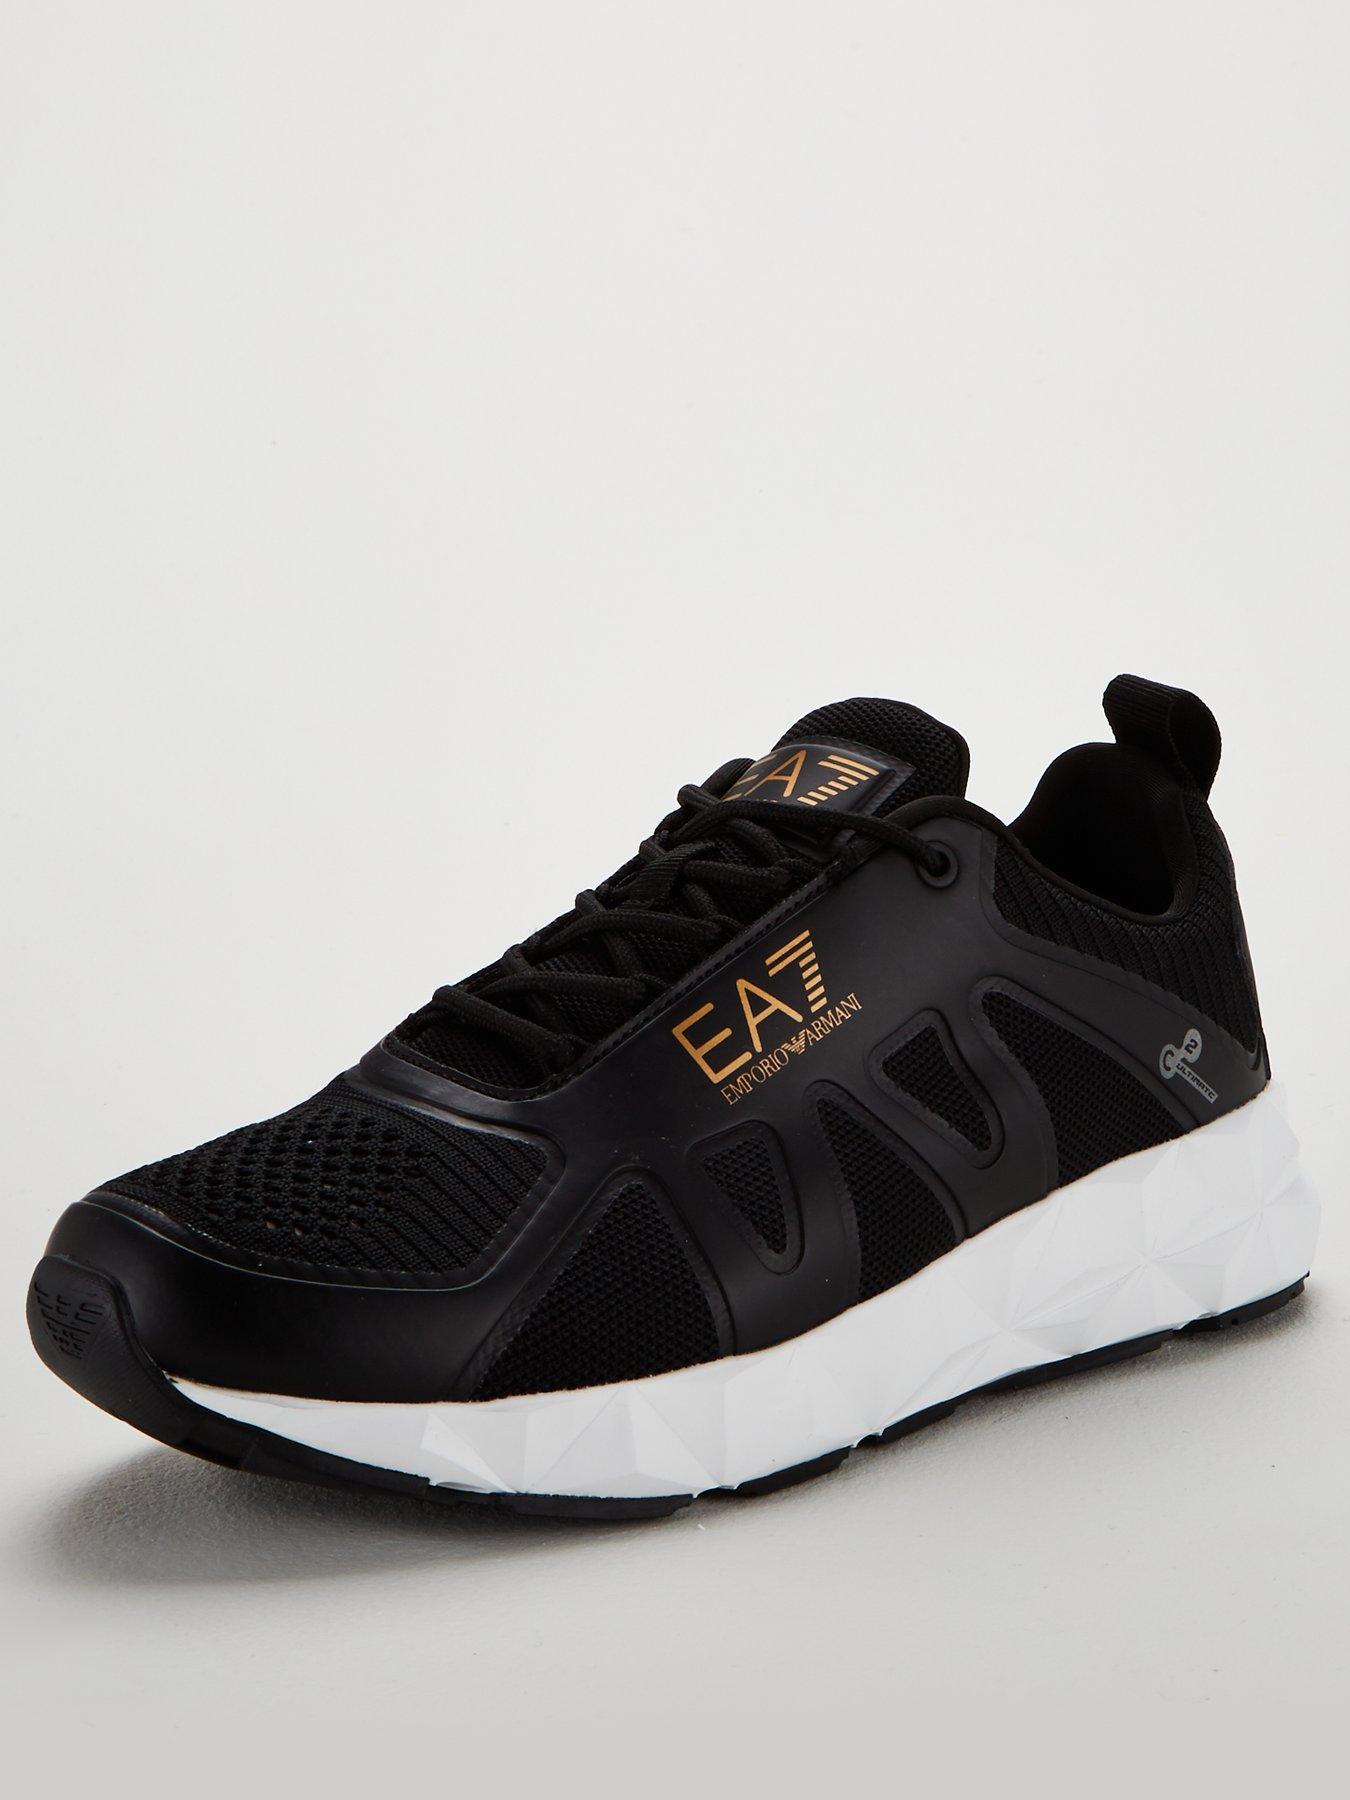 ea7 emporio armani c2 ultimate sneakers